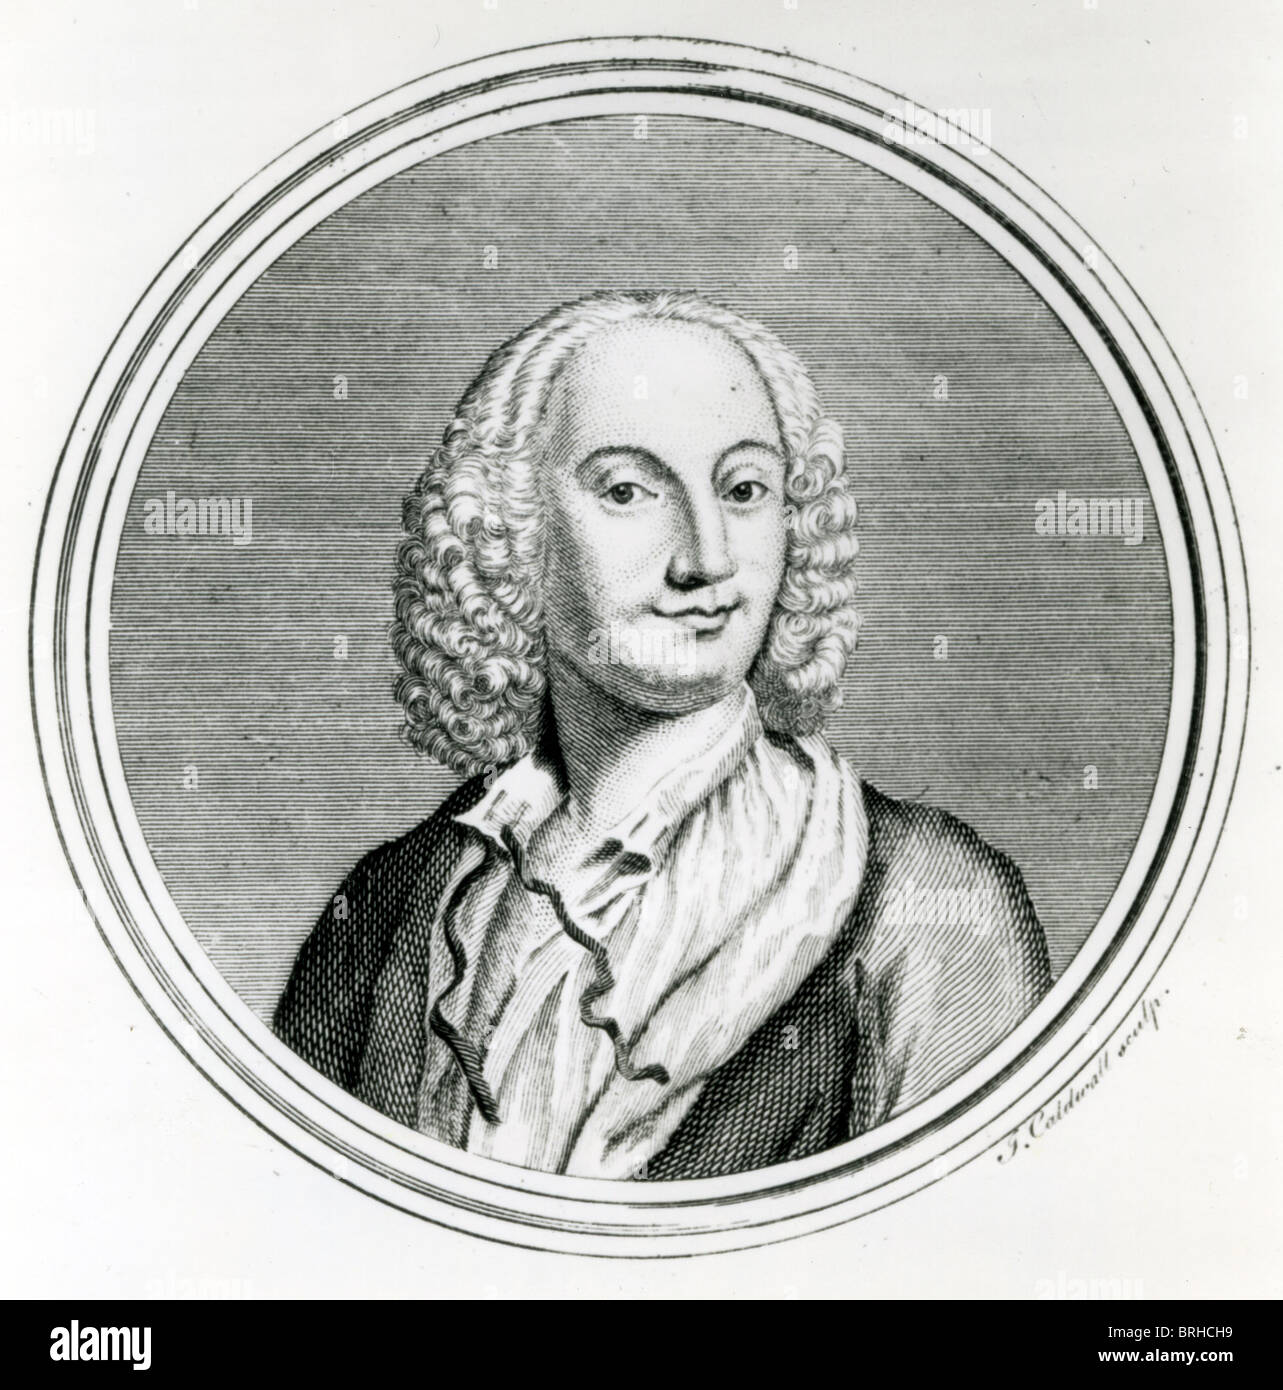 ANTONIO VIVALDI (1678-1741) Italiano compositore barocco Foto Stock